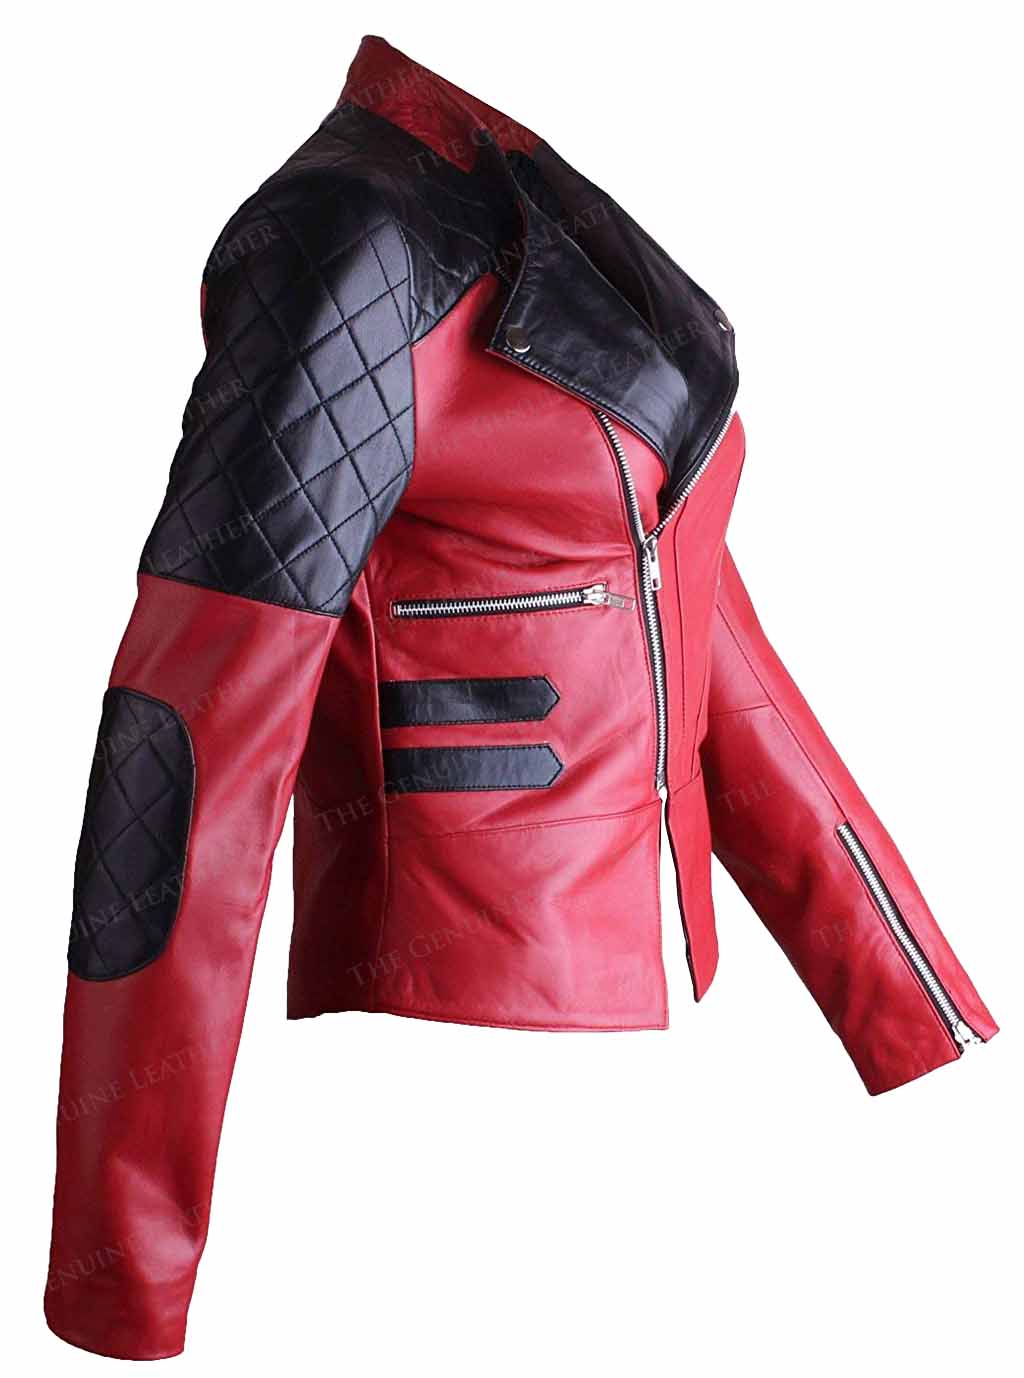 Motor Bike Women Leather Jacket